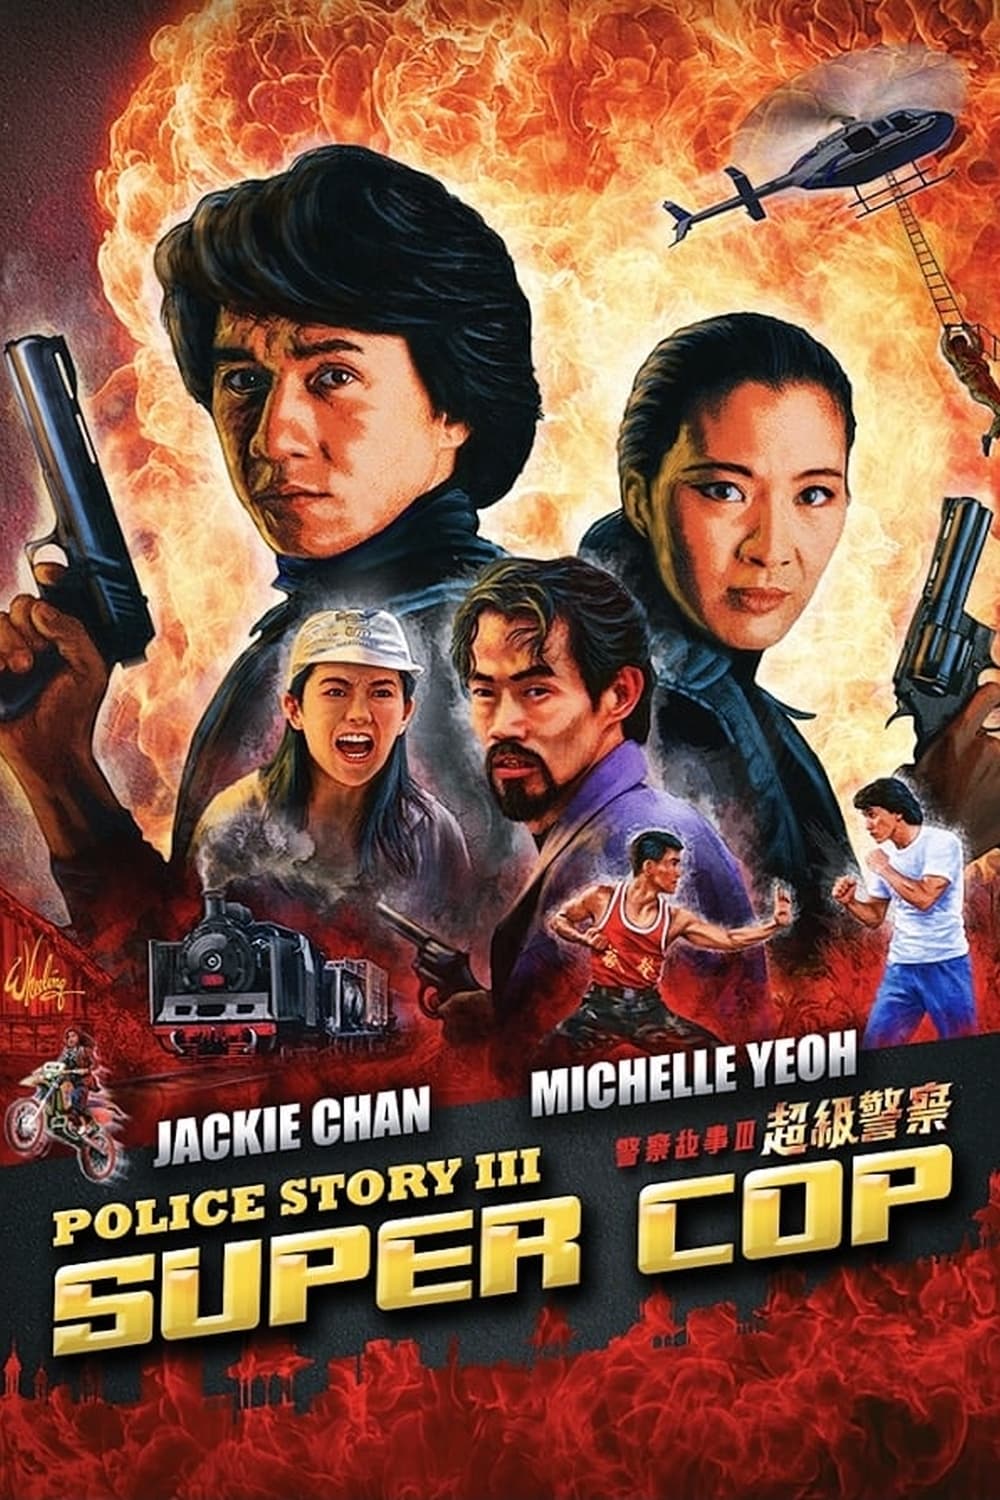 Plakát pro film “Police Story 3”